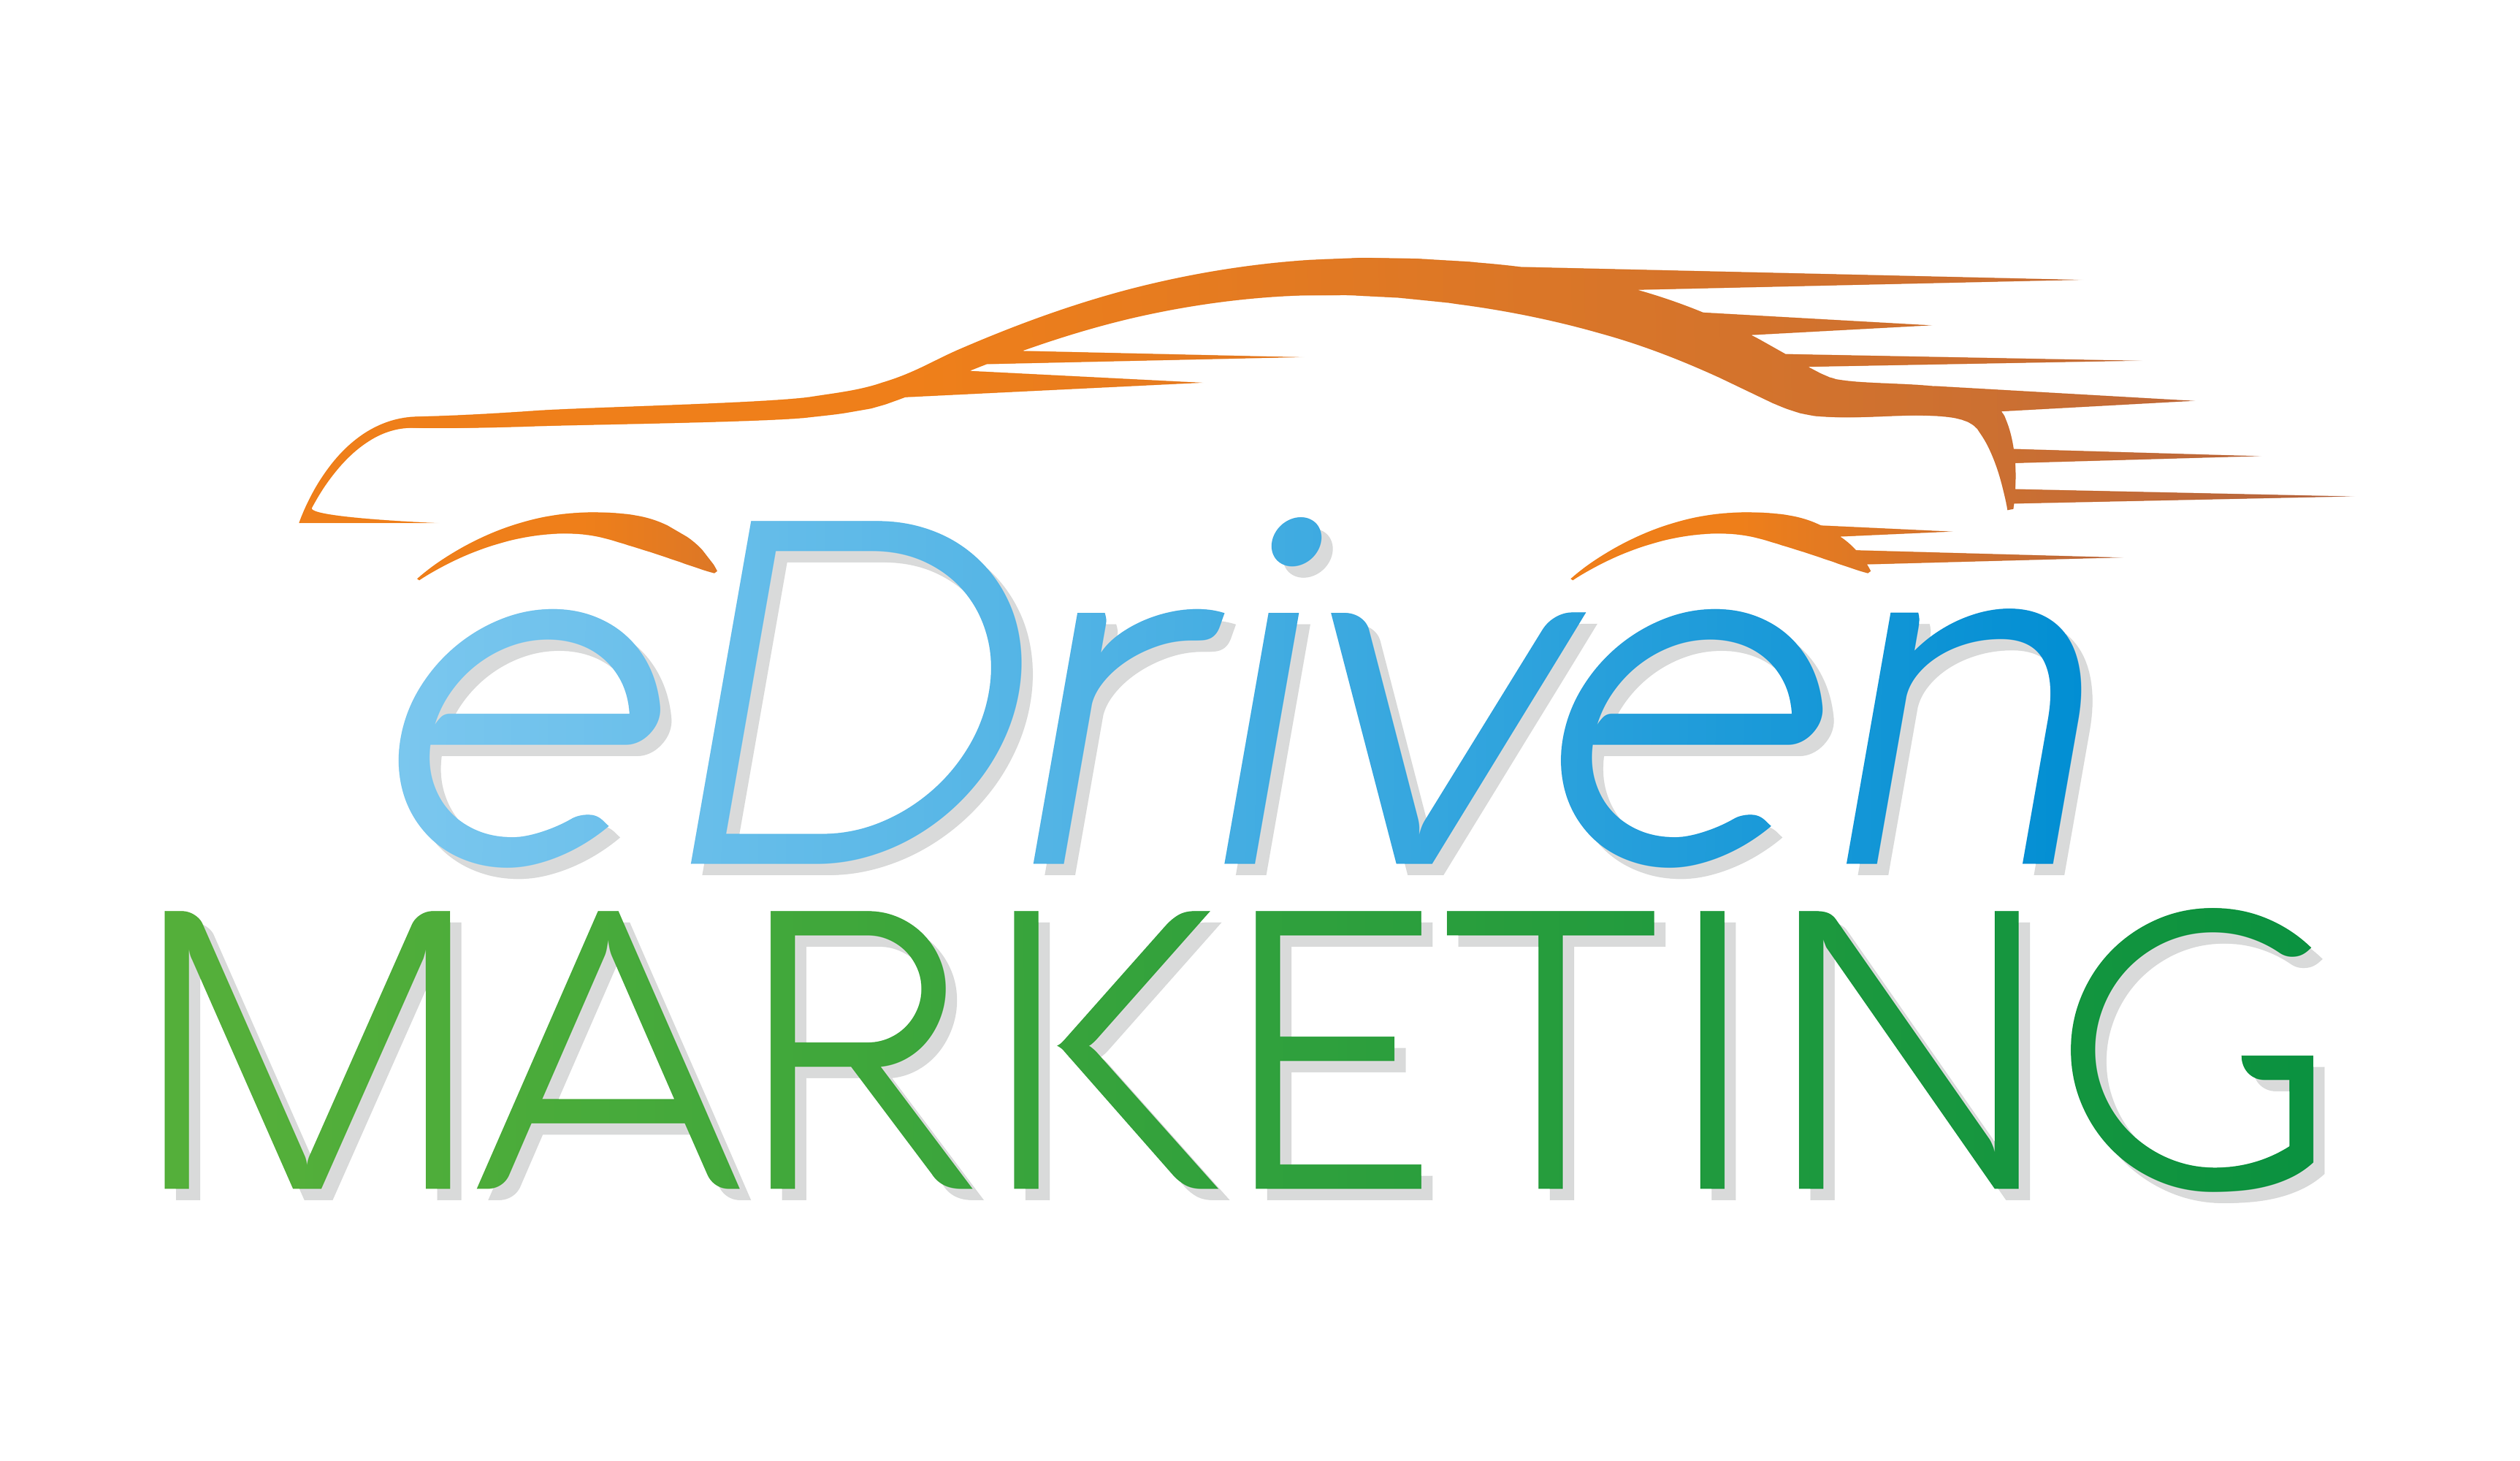 Company Logo For eDriven Marketing'